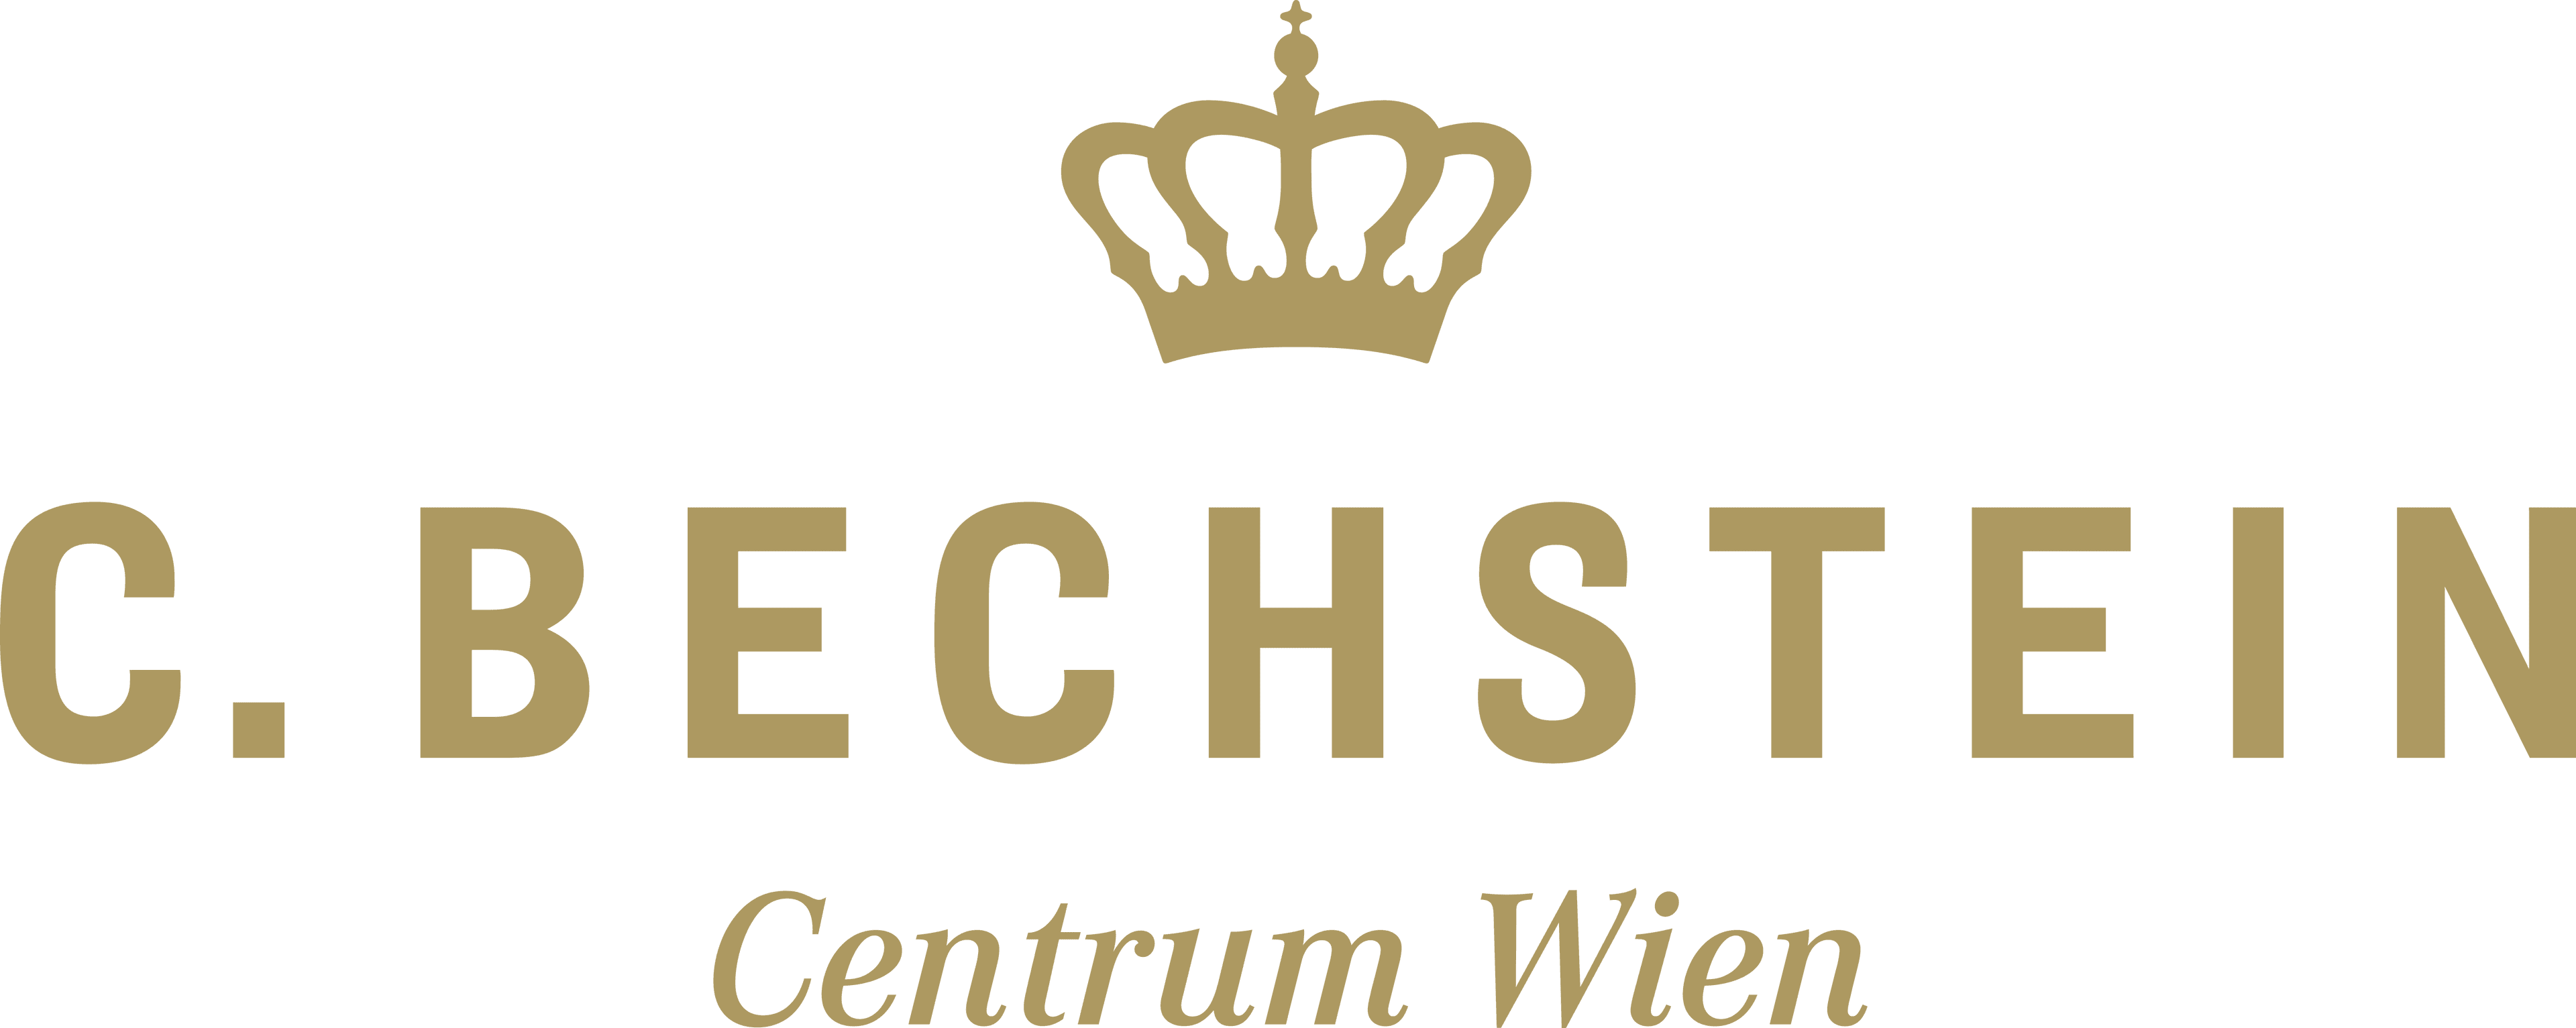 Logo C. Bechstein Centrum Wien